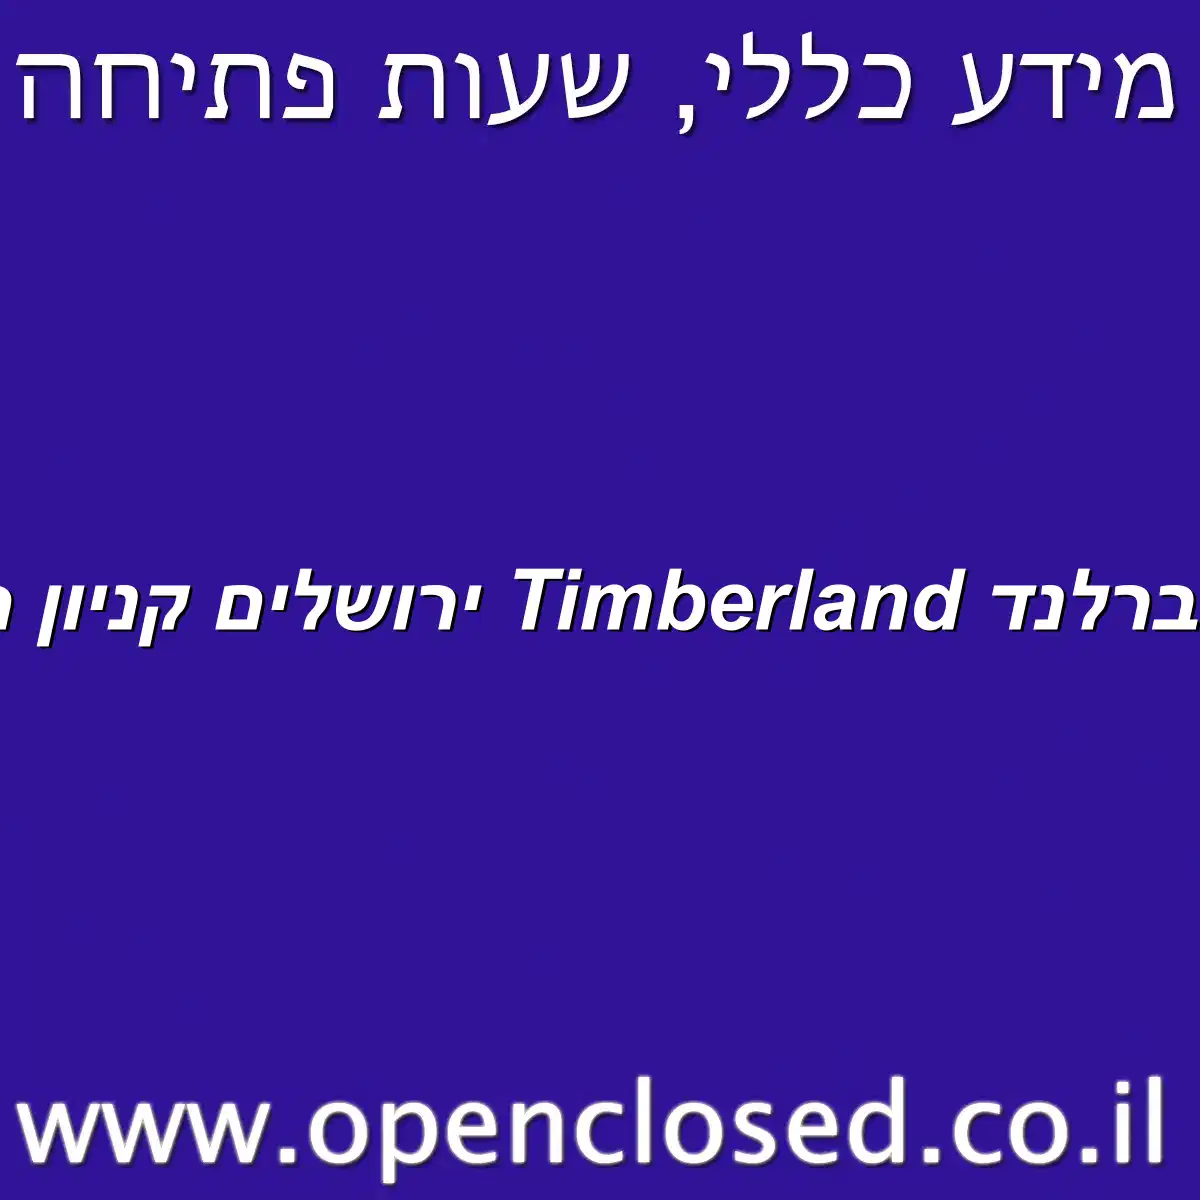 טימברלנד Timberland ירושלים קניון הדר